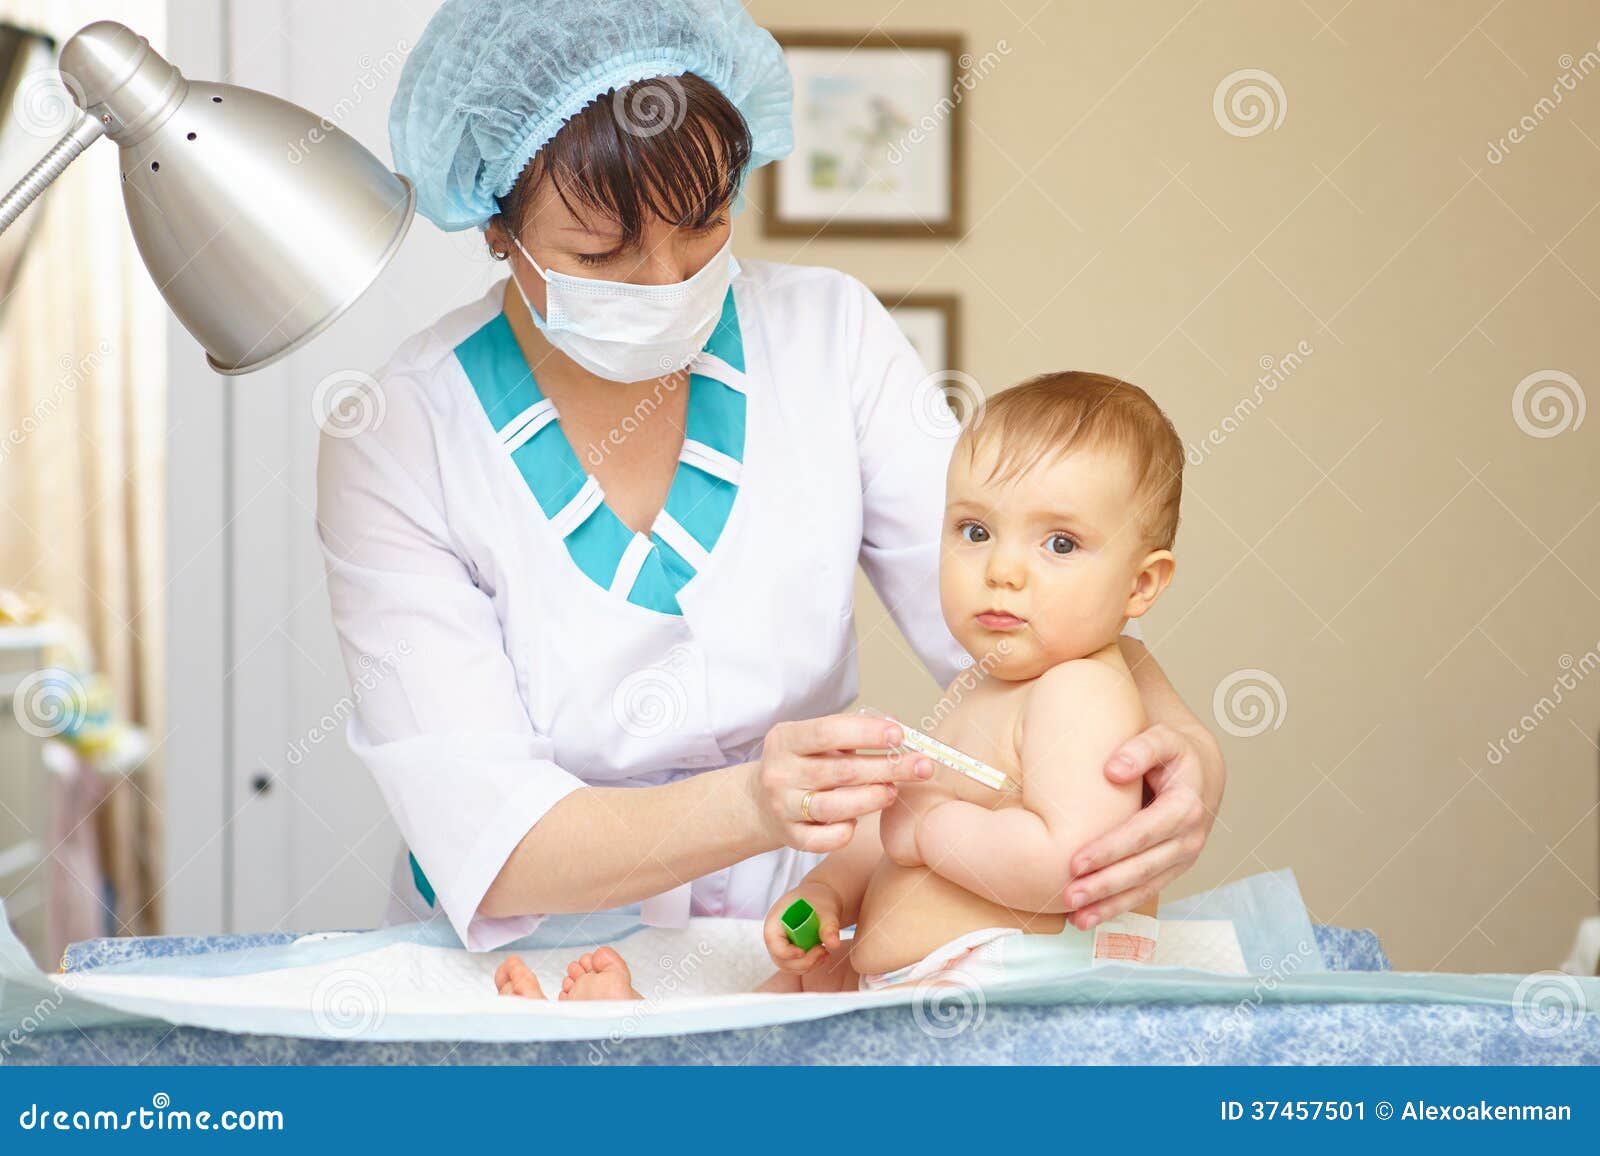 Atención Sanitaria Y Tratamiento Del Bebé. Síntomas Médicos